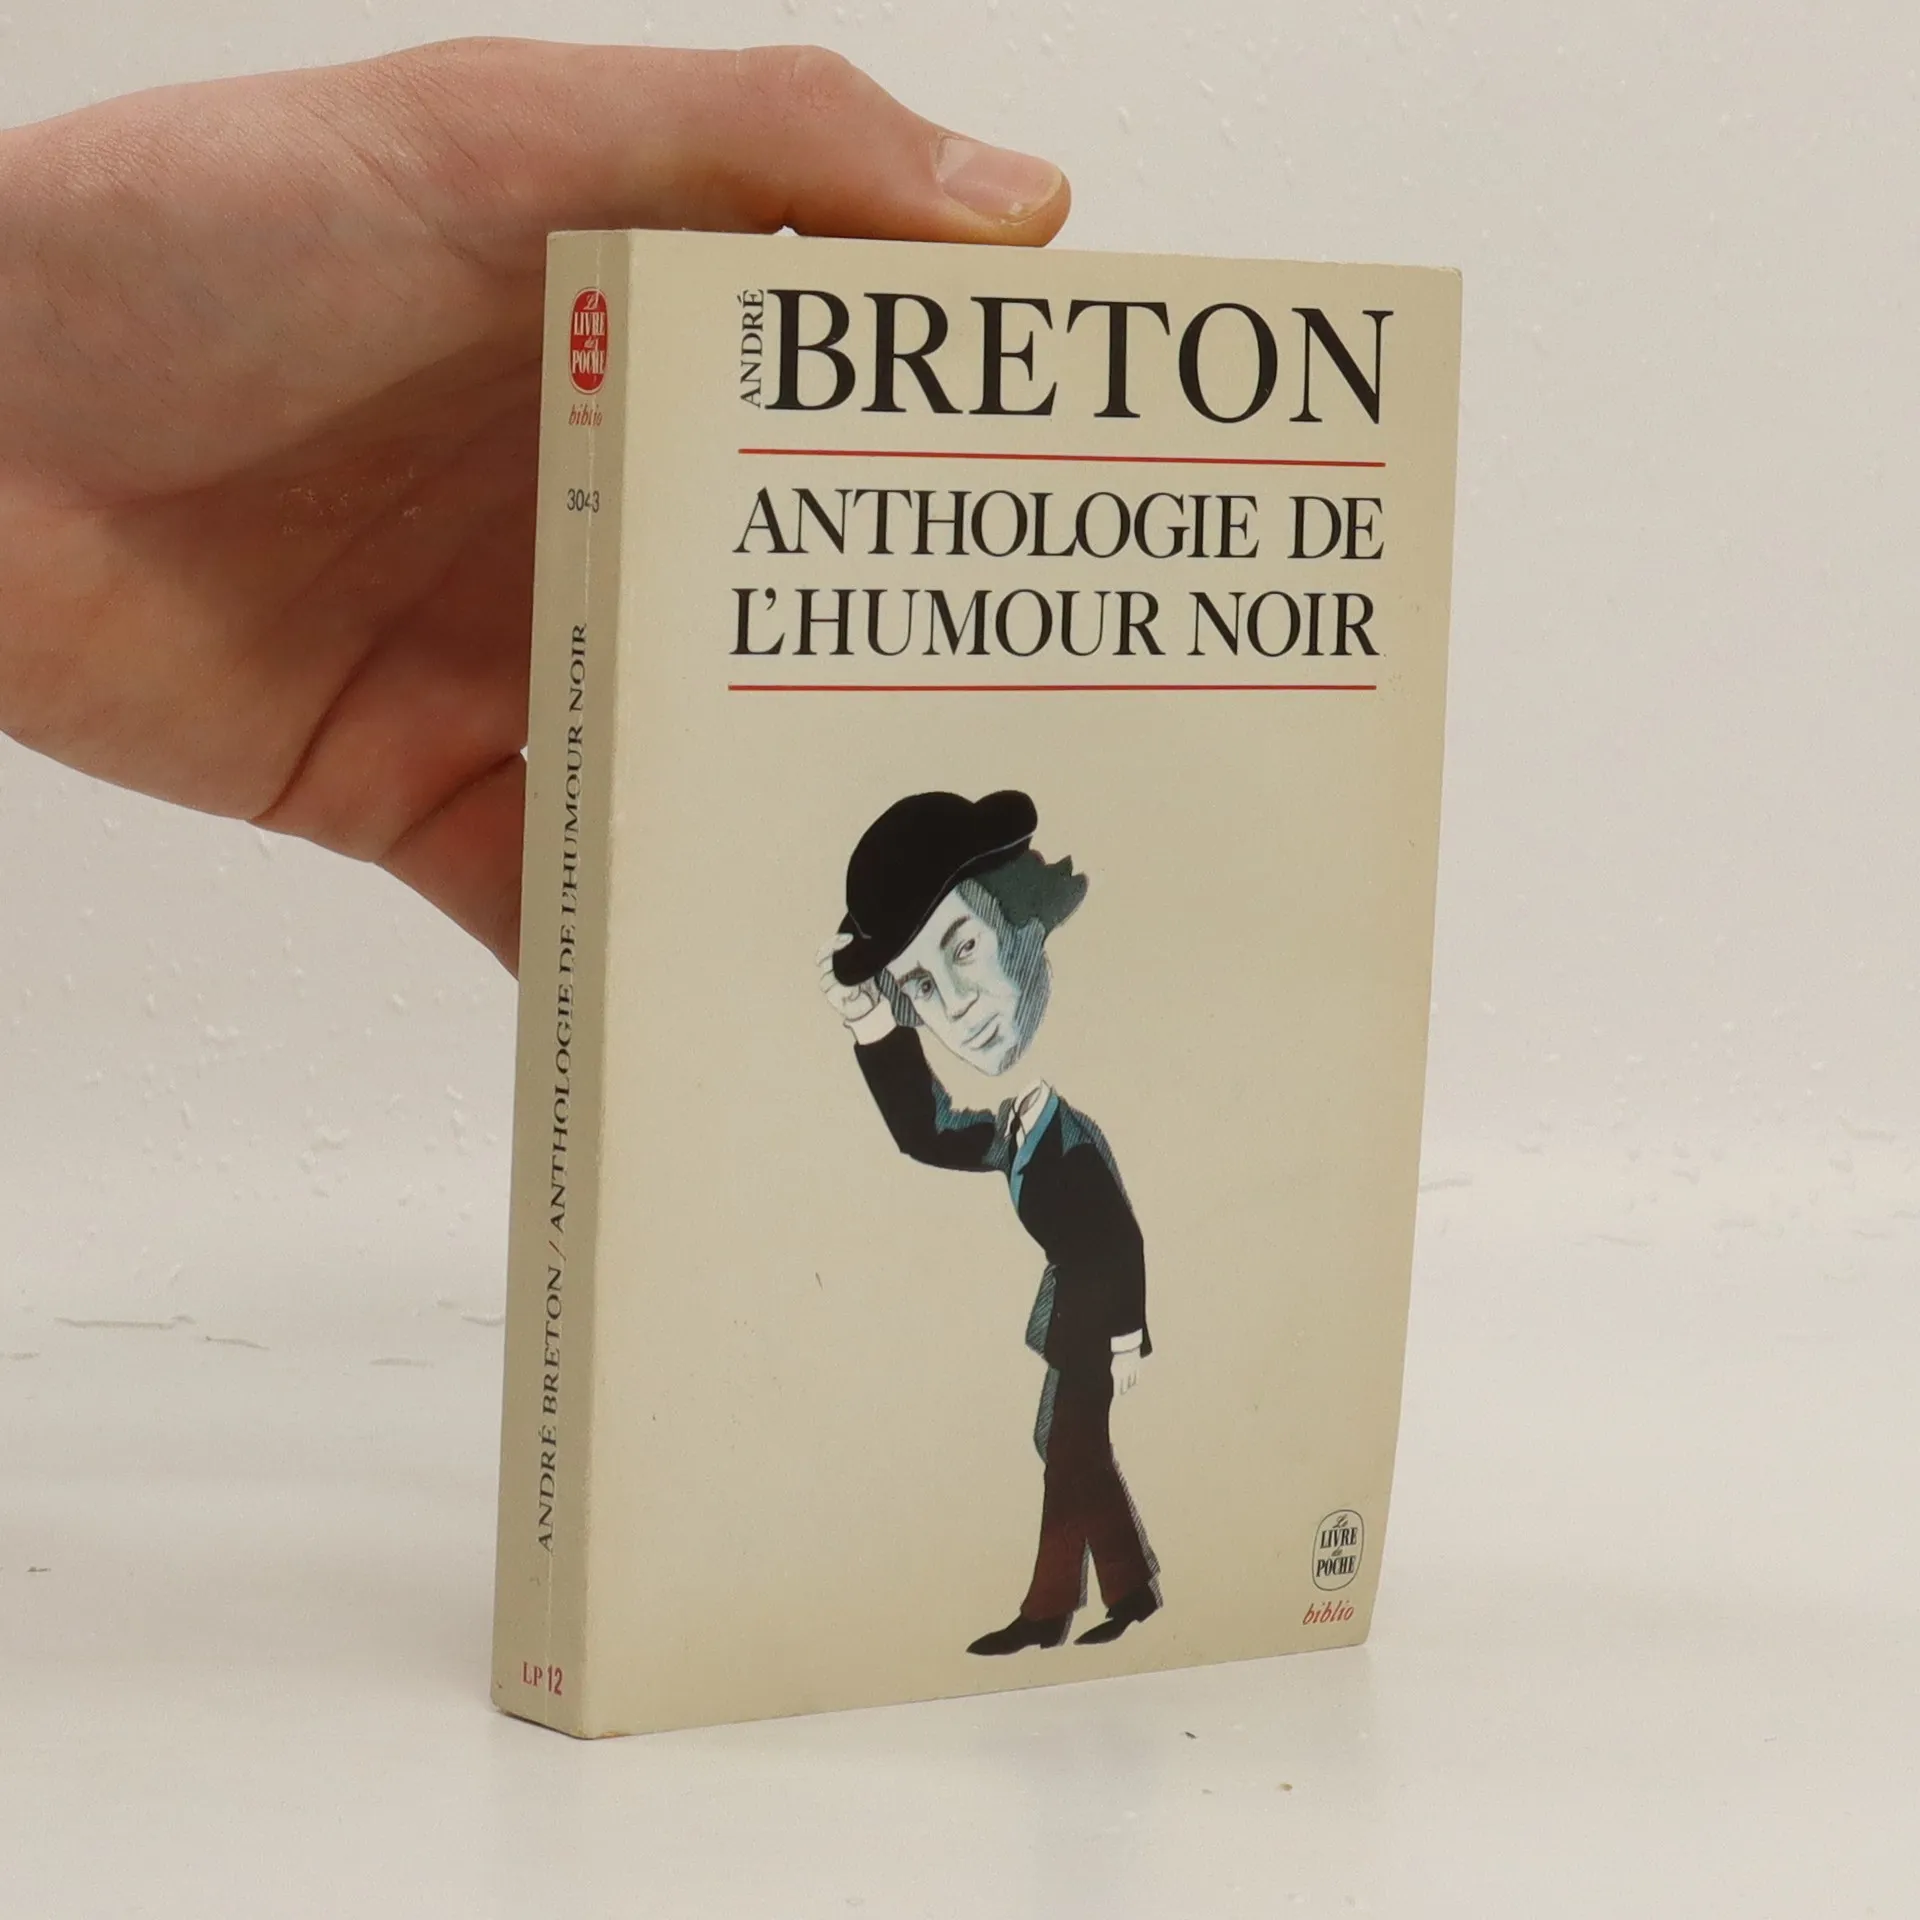 Anthologie de l'humour noir, André Breton